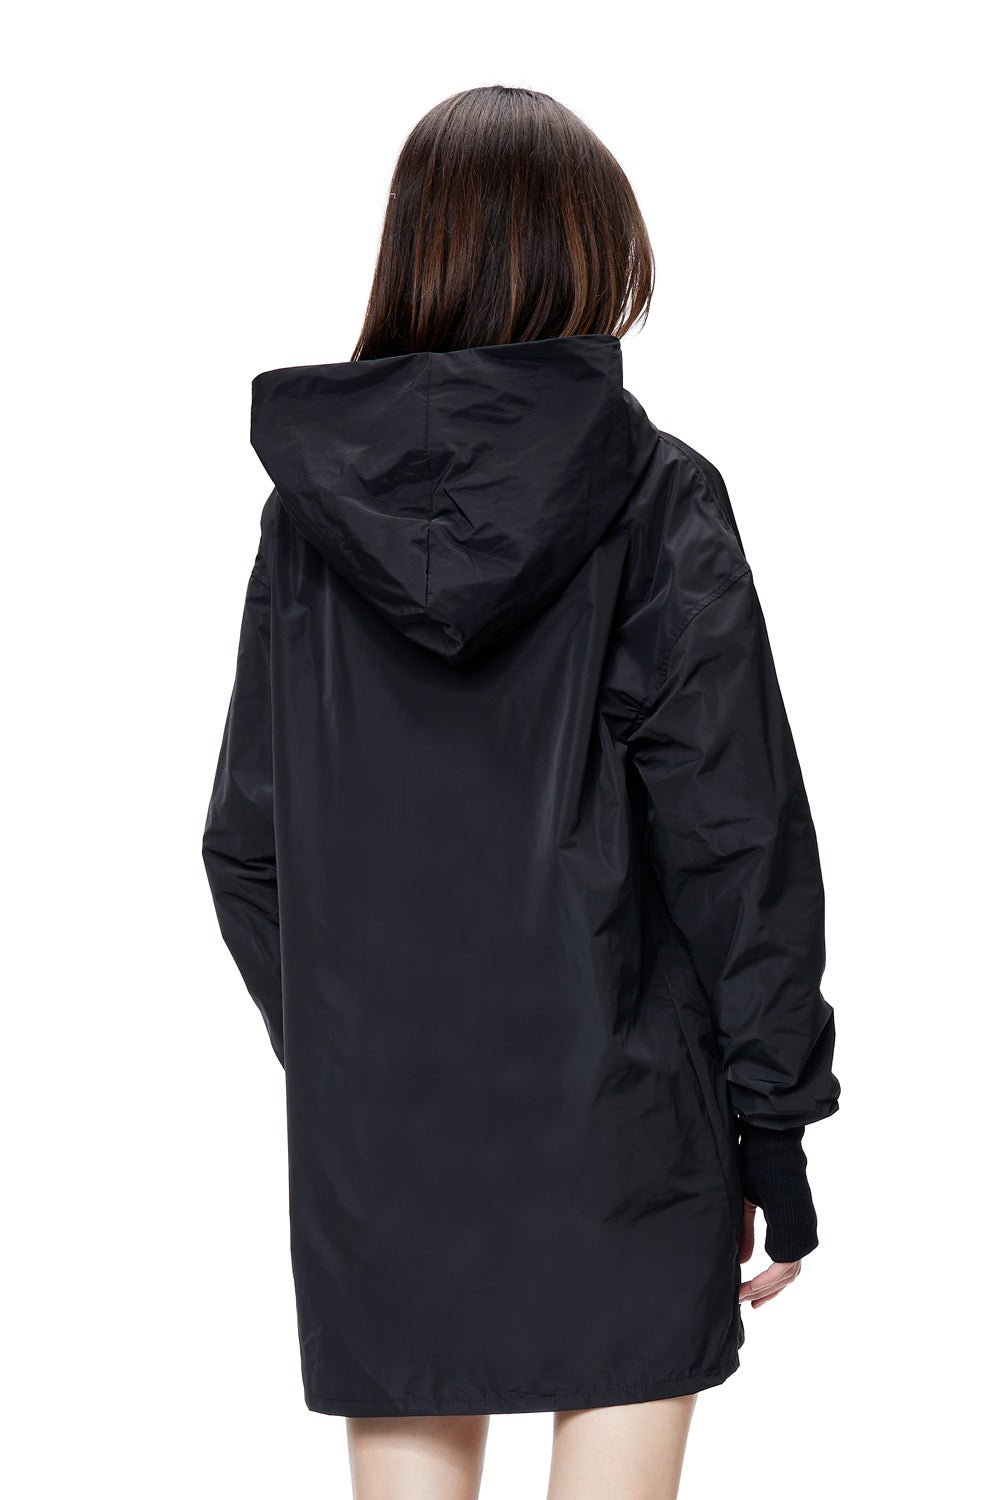 Hanorac damă, negru, rezistent la ploaie, tehnologie impermeabilă, detalii elegante